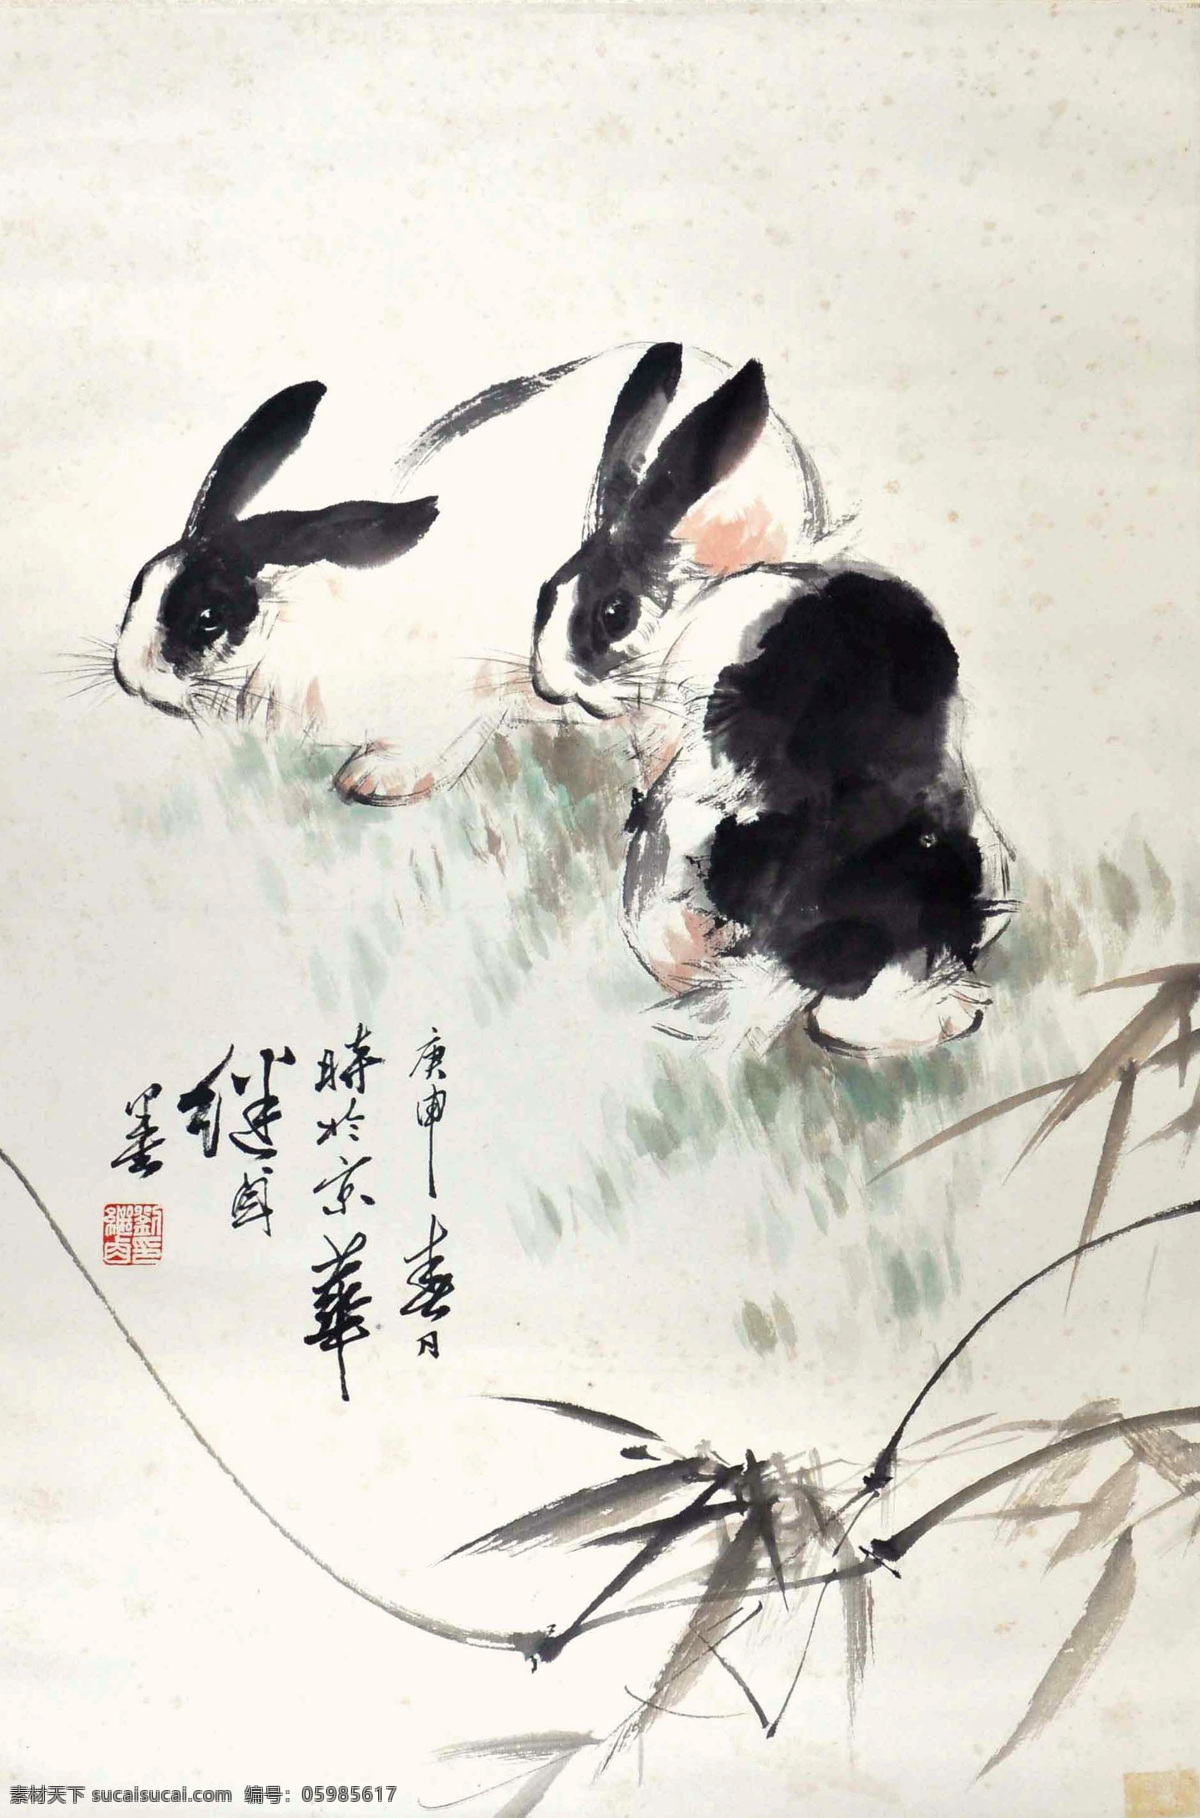 刘继卣 双兔 写意 水墨画 国画 中国画 传统画 名家 绘画 艺术 文化艺术 绘画书法